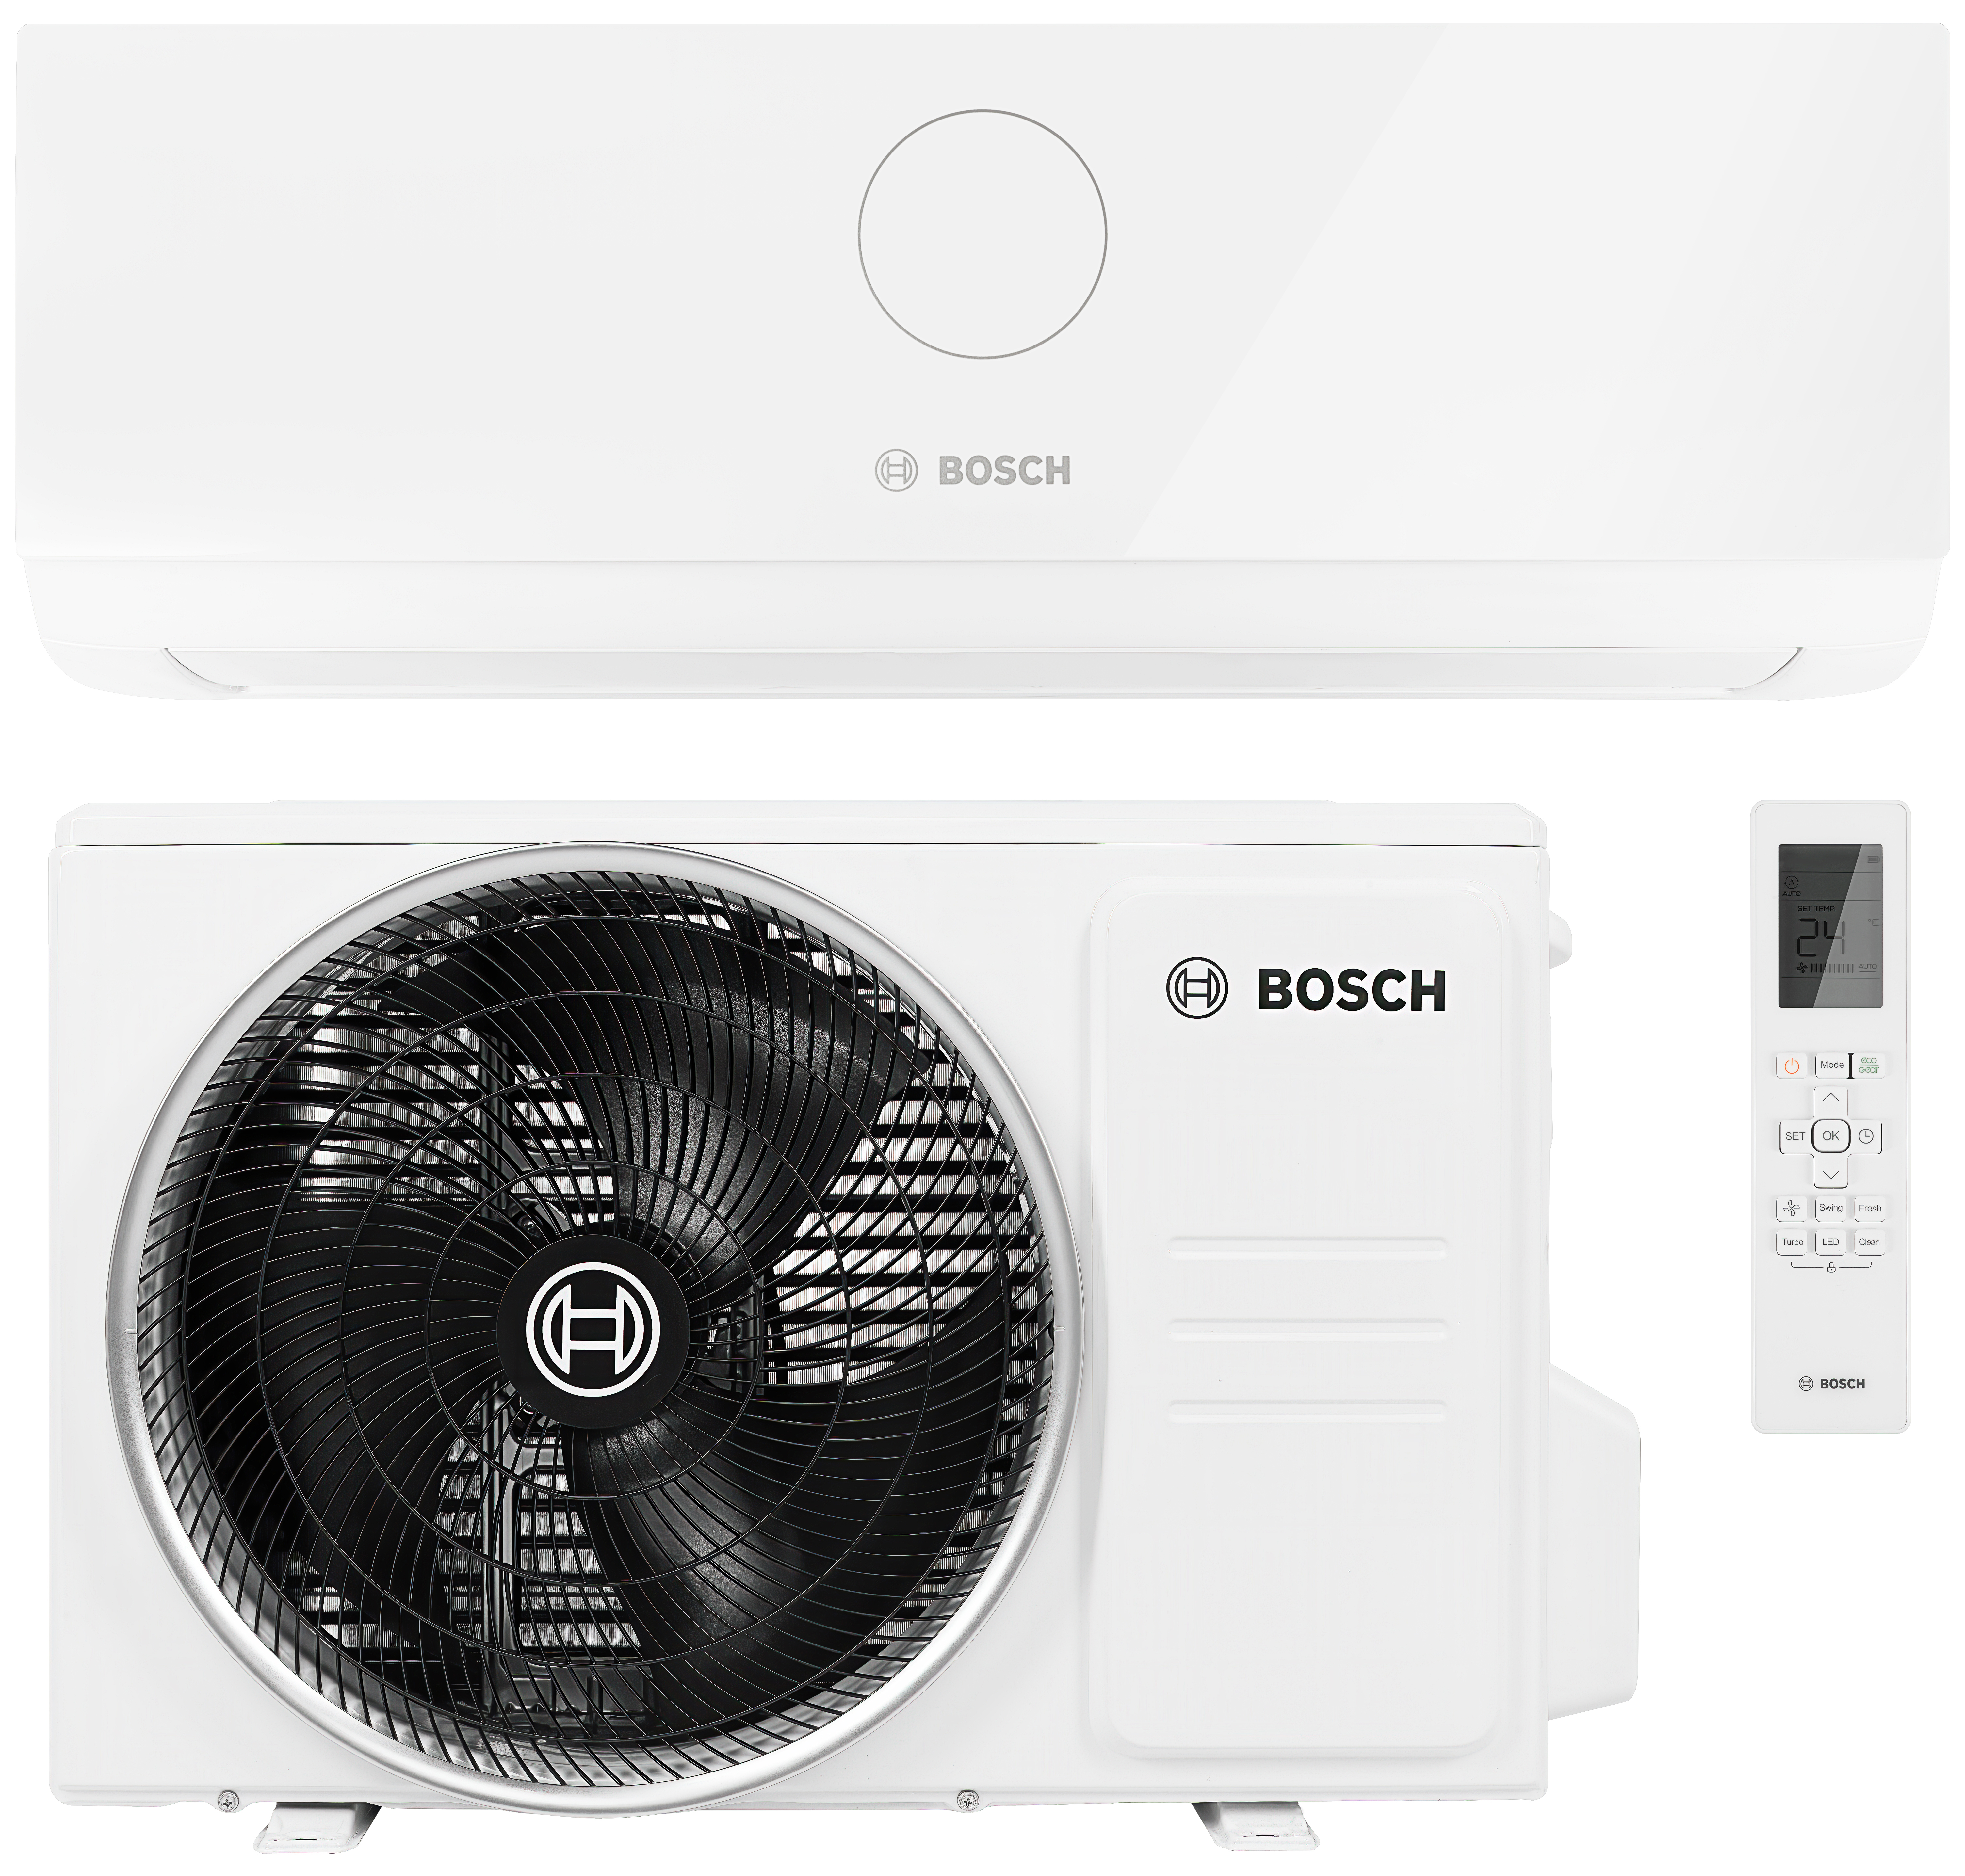 Кондиционер сплит-система Bosch Climate CL3000i 35 E в интернет-магазине, главное фото